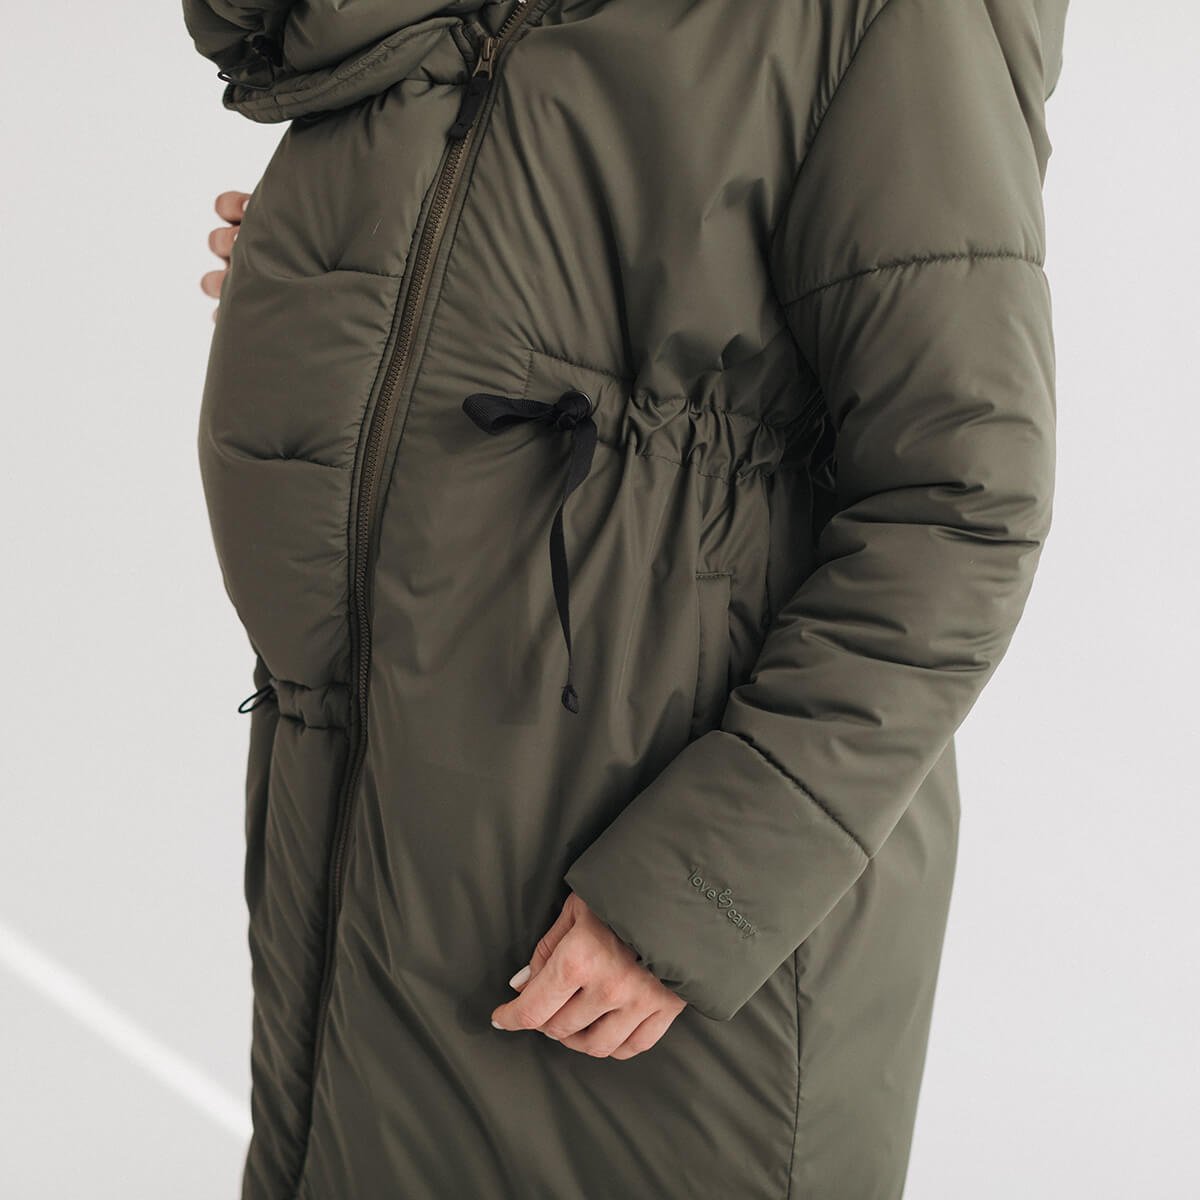 Зимова слінггокуртка / куртка для вагітних 3в1 Олива